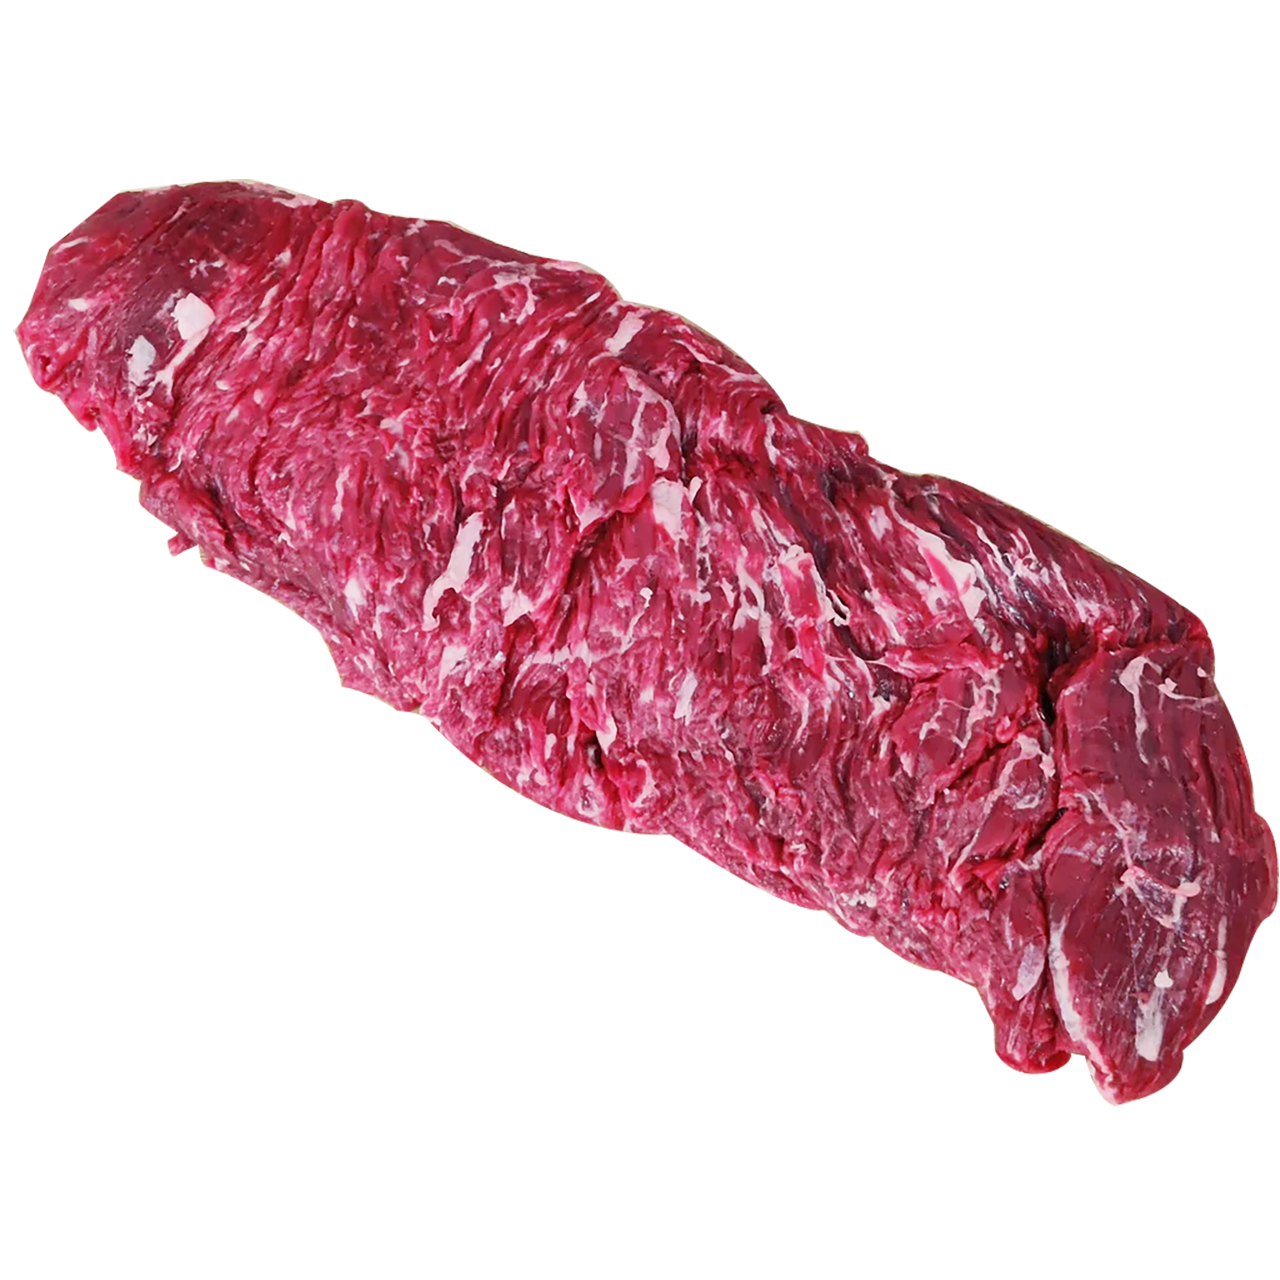 Beef Bavette Steak - Sirloin Flap